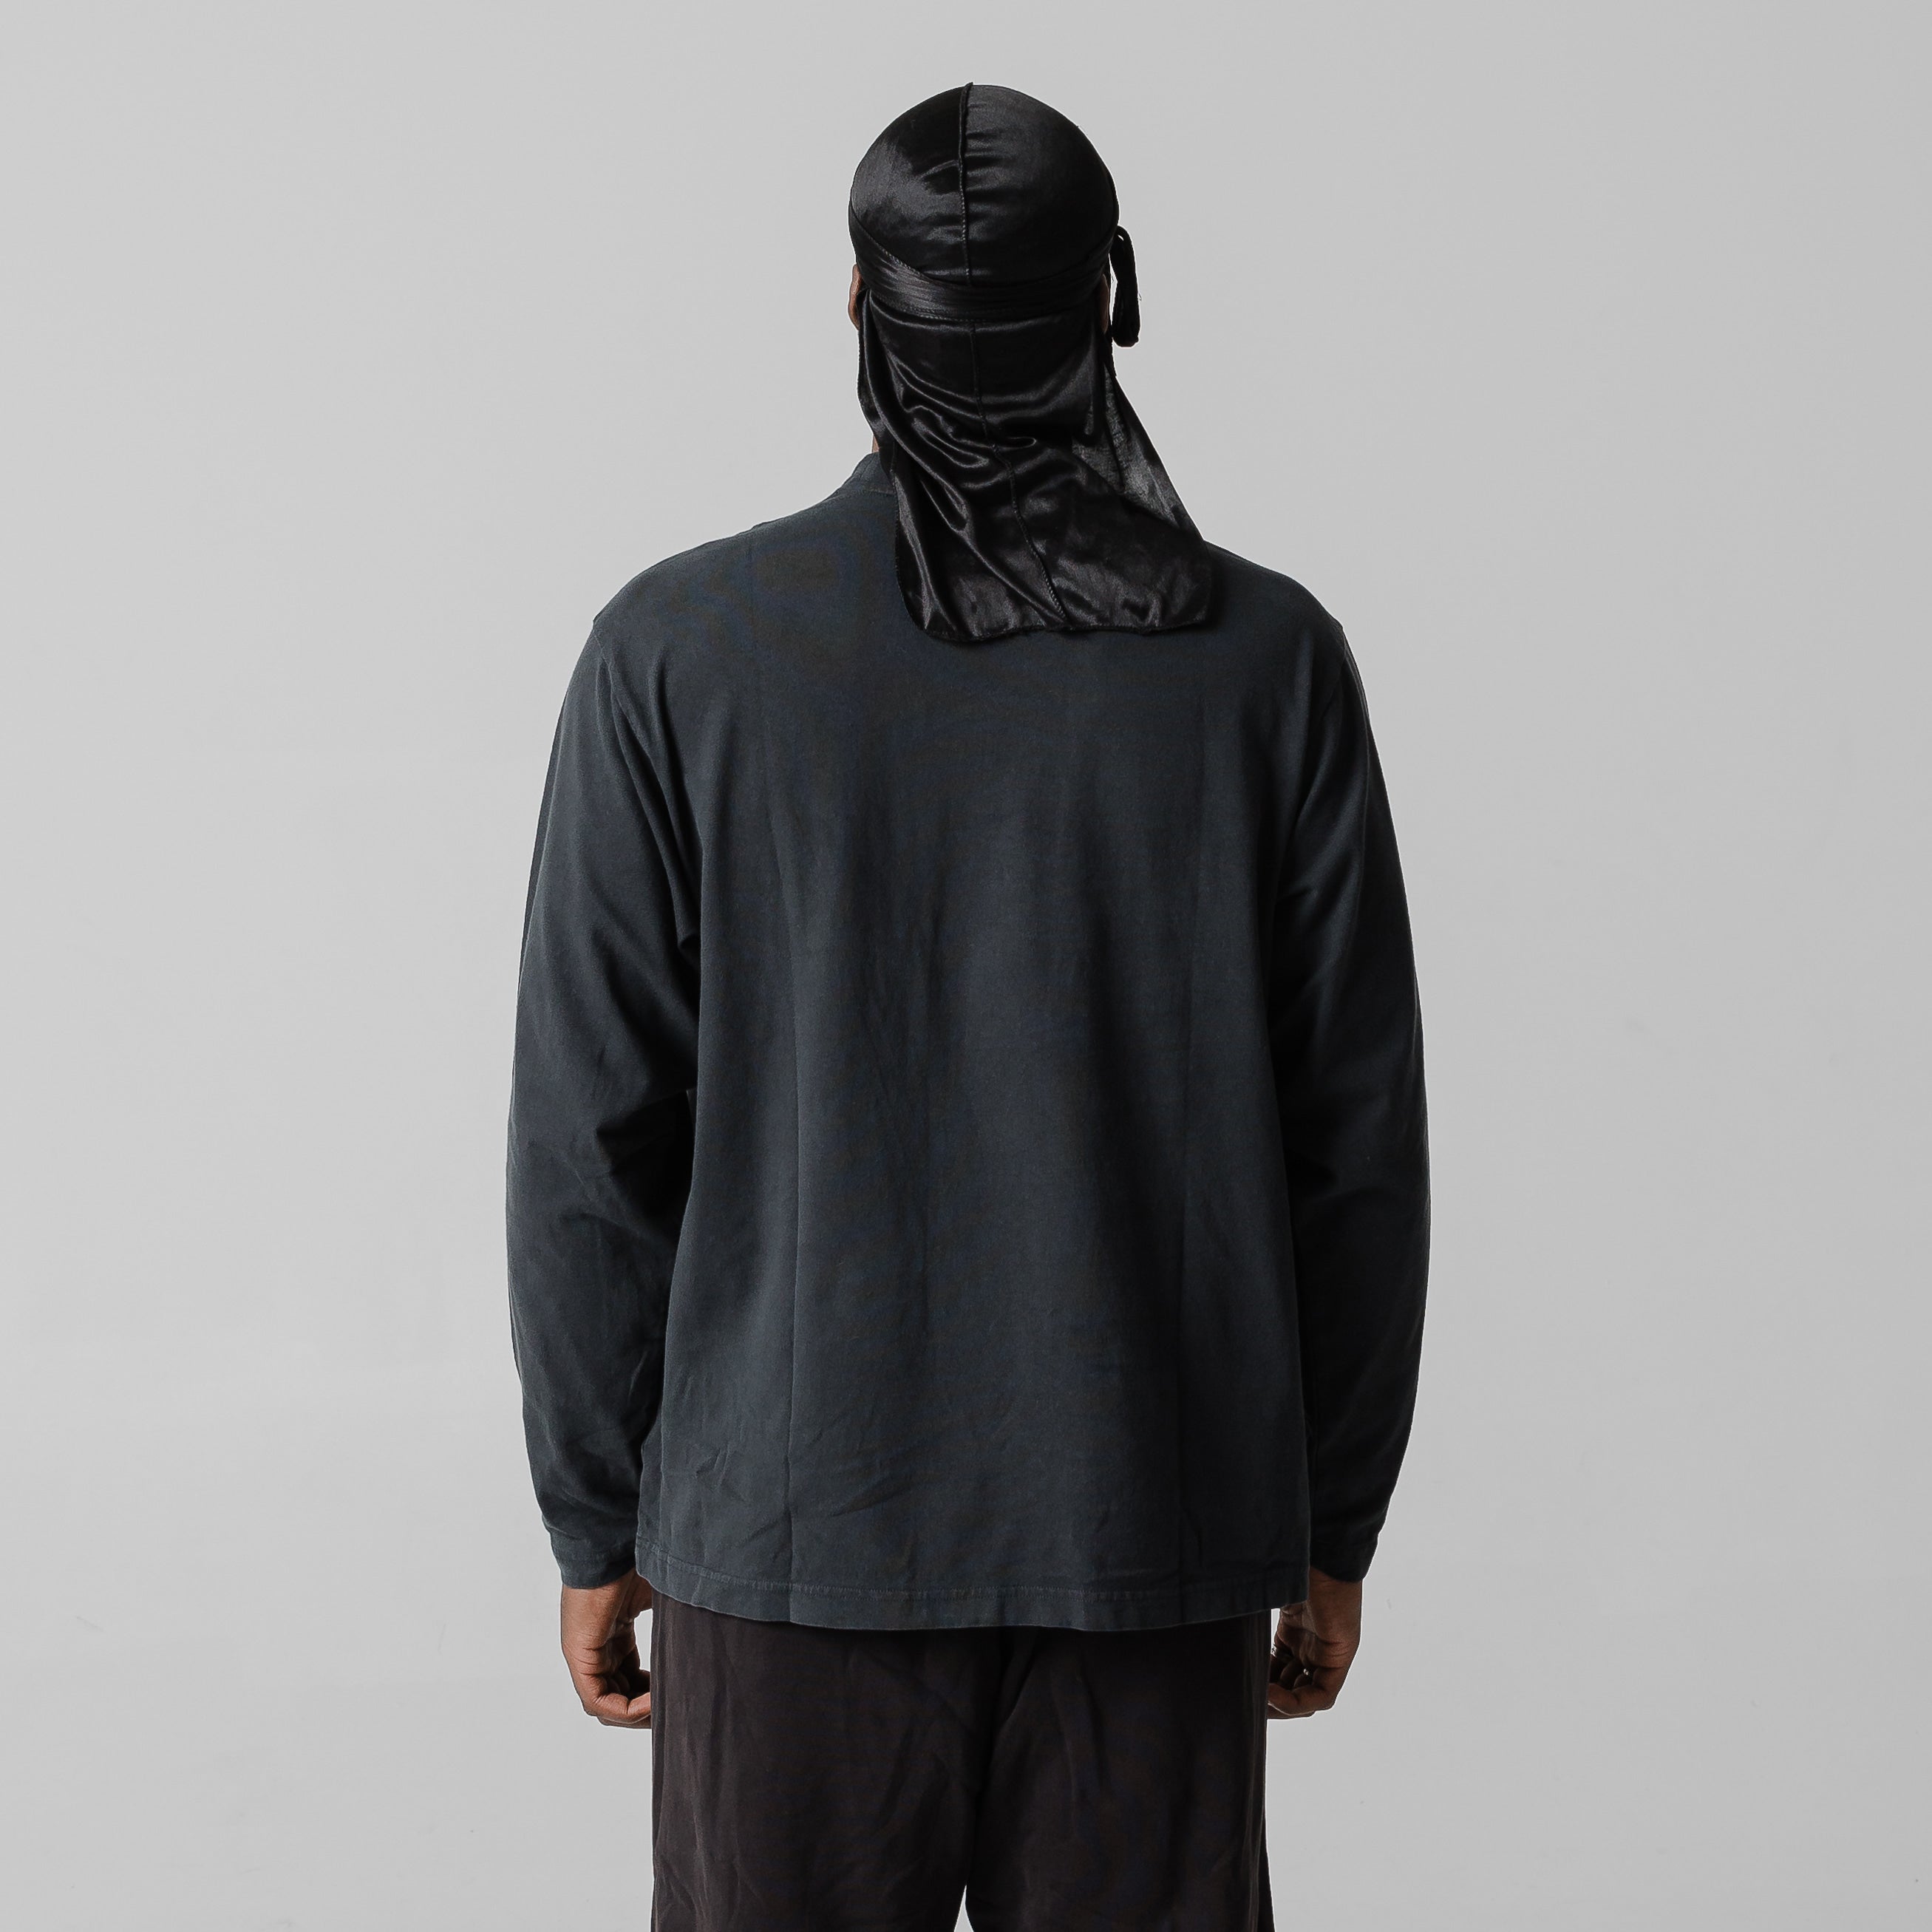 Yeezy Gap Unreleased Season Long Sleeve T-Shirt Black – Throwback 